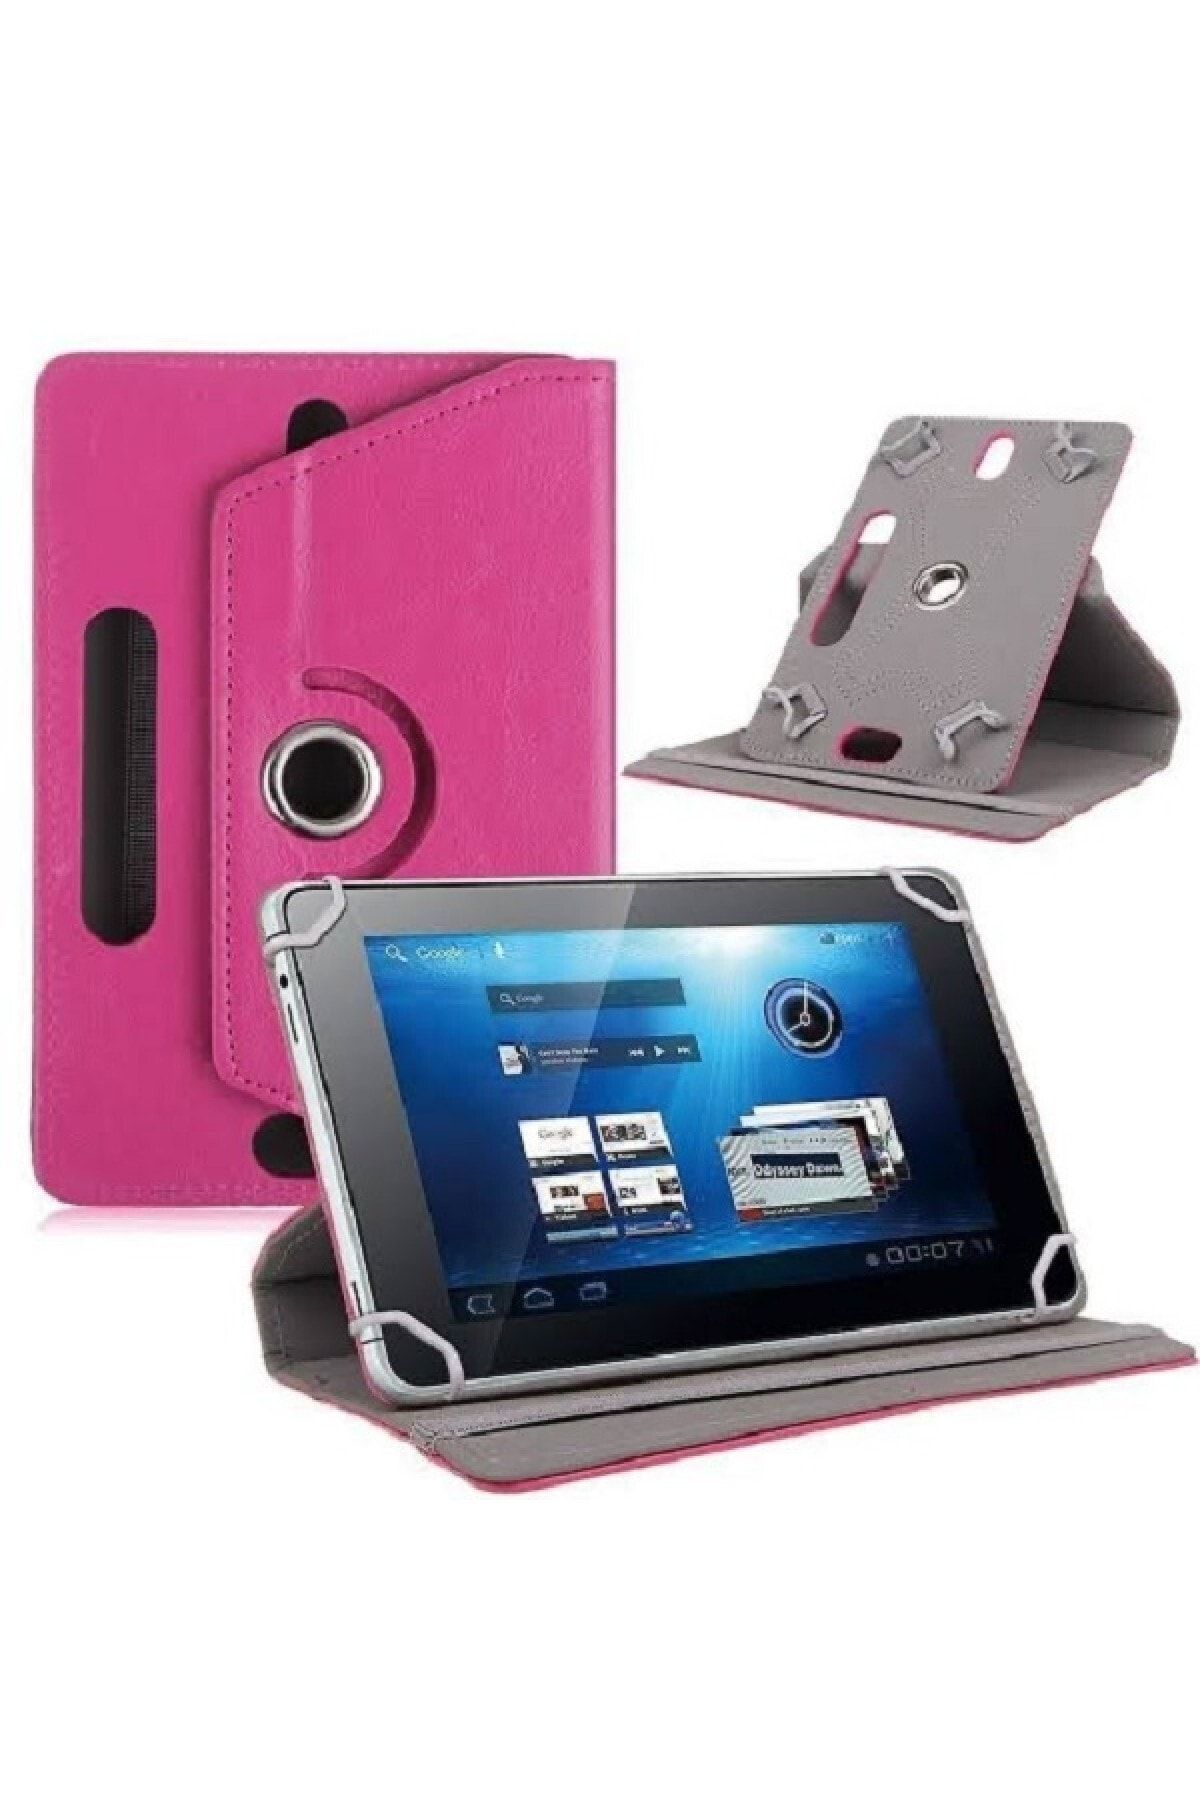 delux case Alcatel Smart Tab 7 7" Uyumlu Universal 7 Inch Uyumlu Deri Tablet Kılıf Sıtandlı 360° Dönebilen